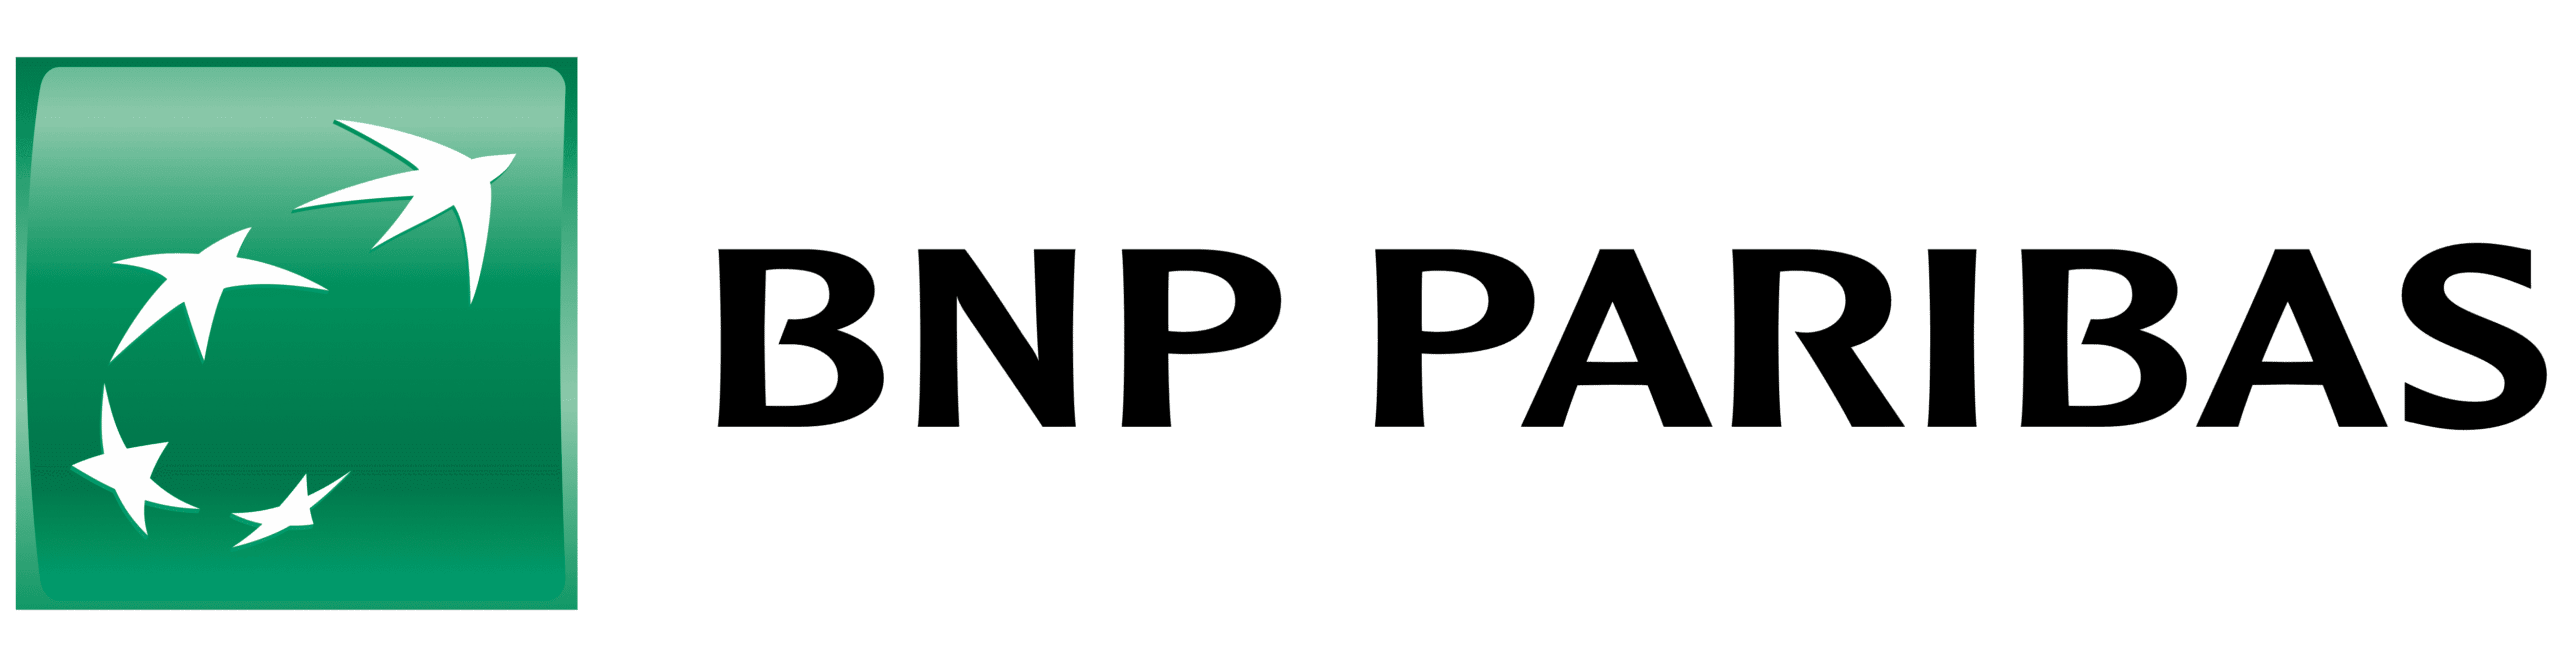 BNP Paribas – Solfea Banque n’existe plus